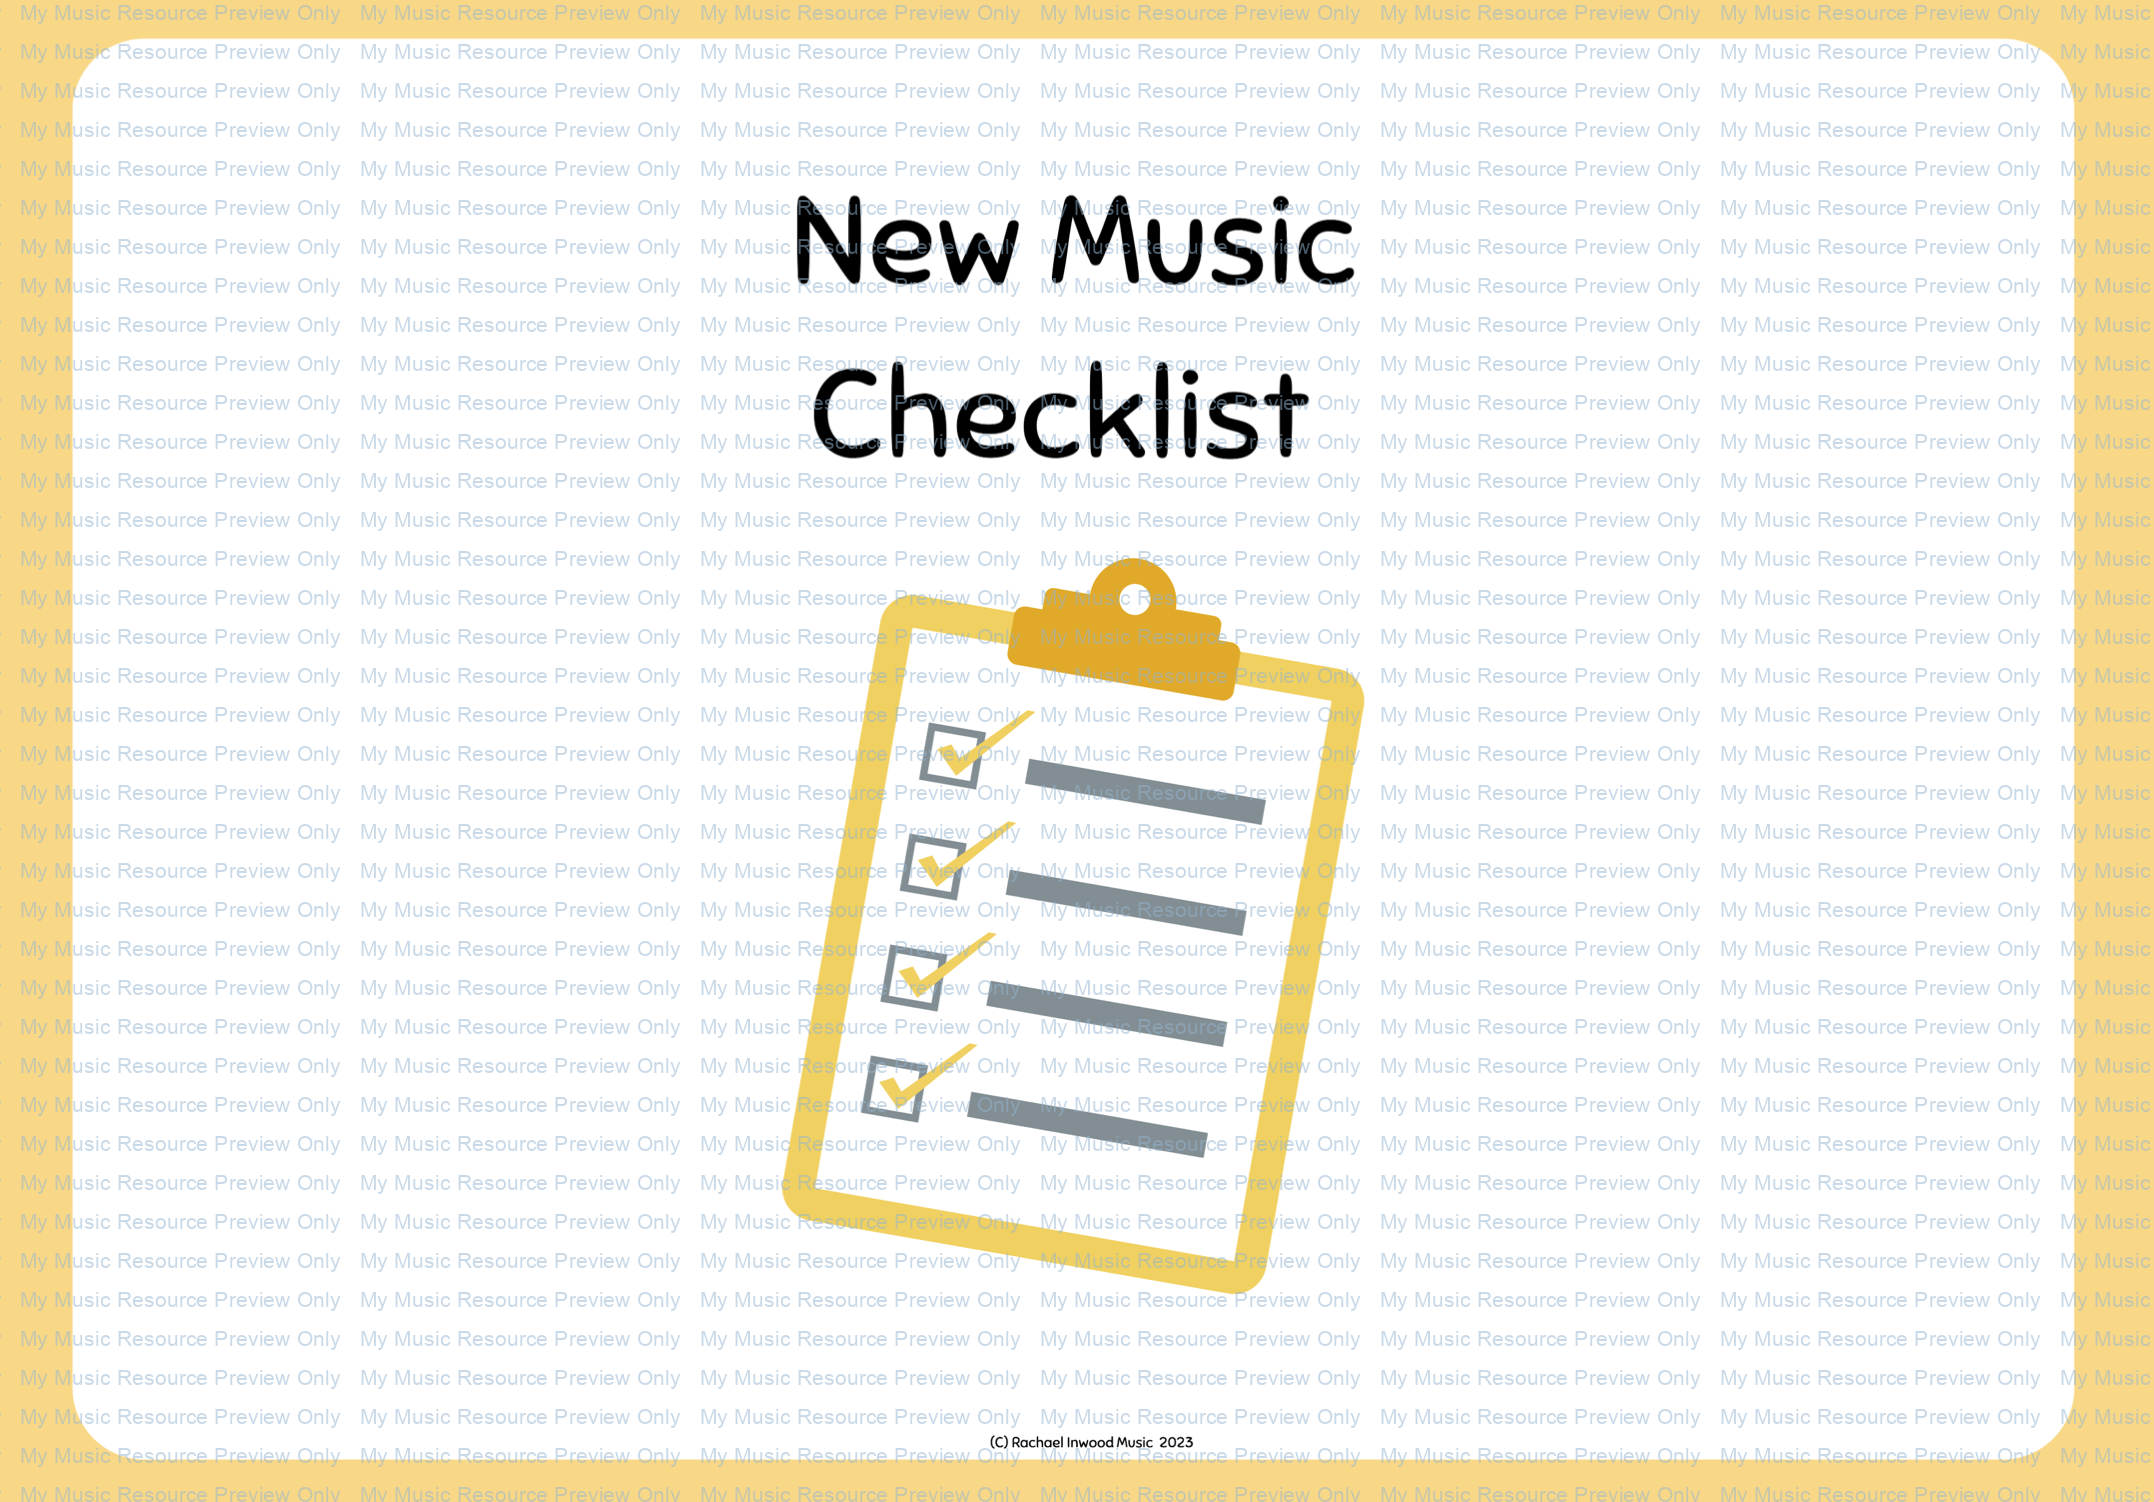 New music checklist